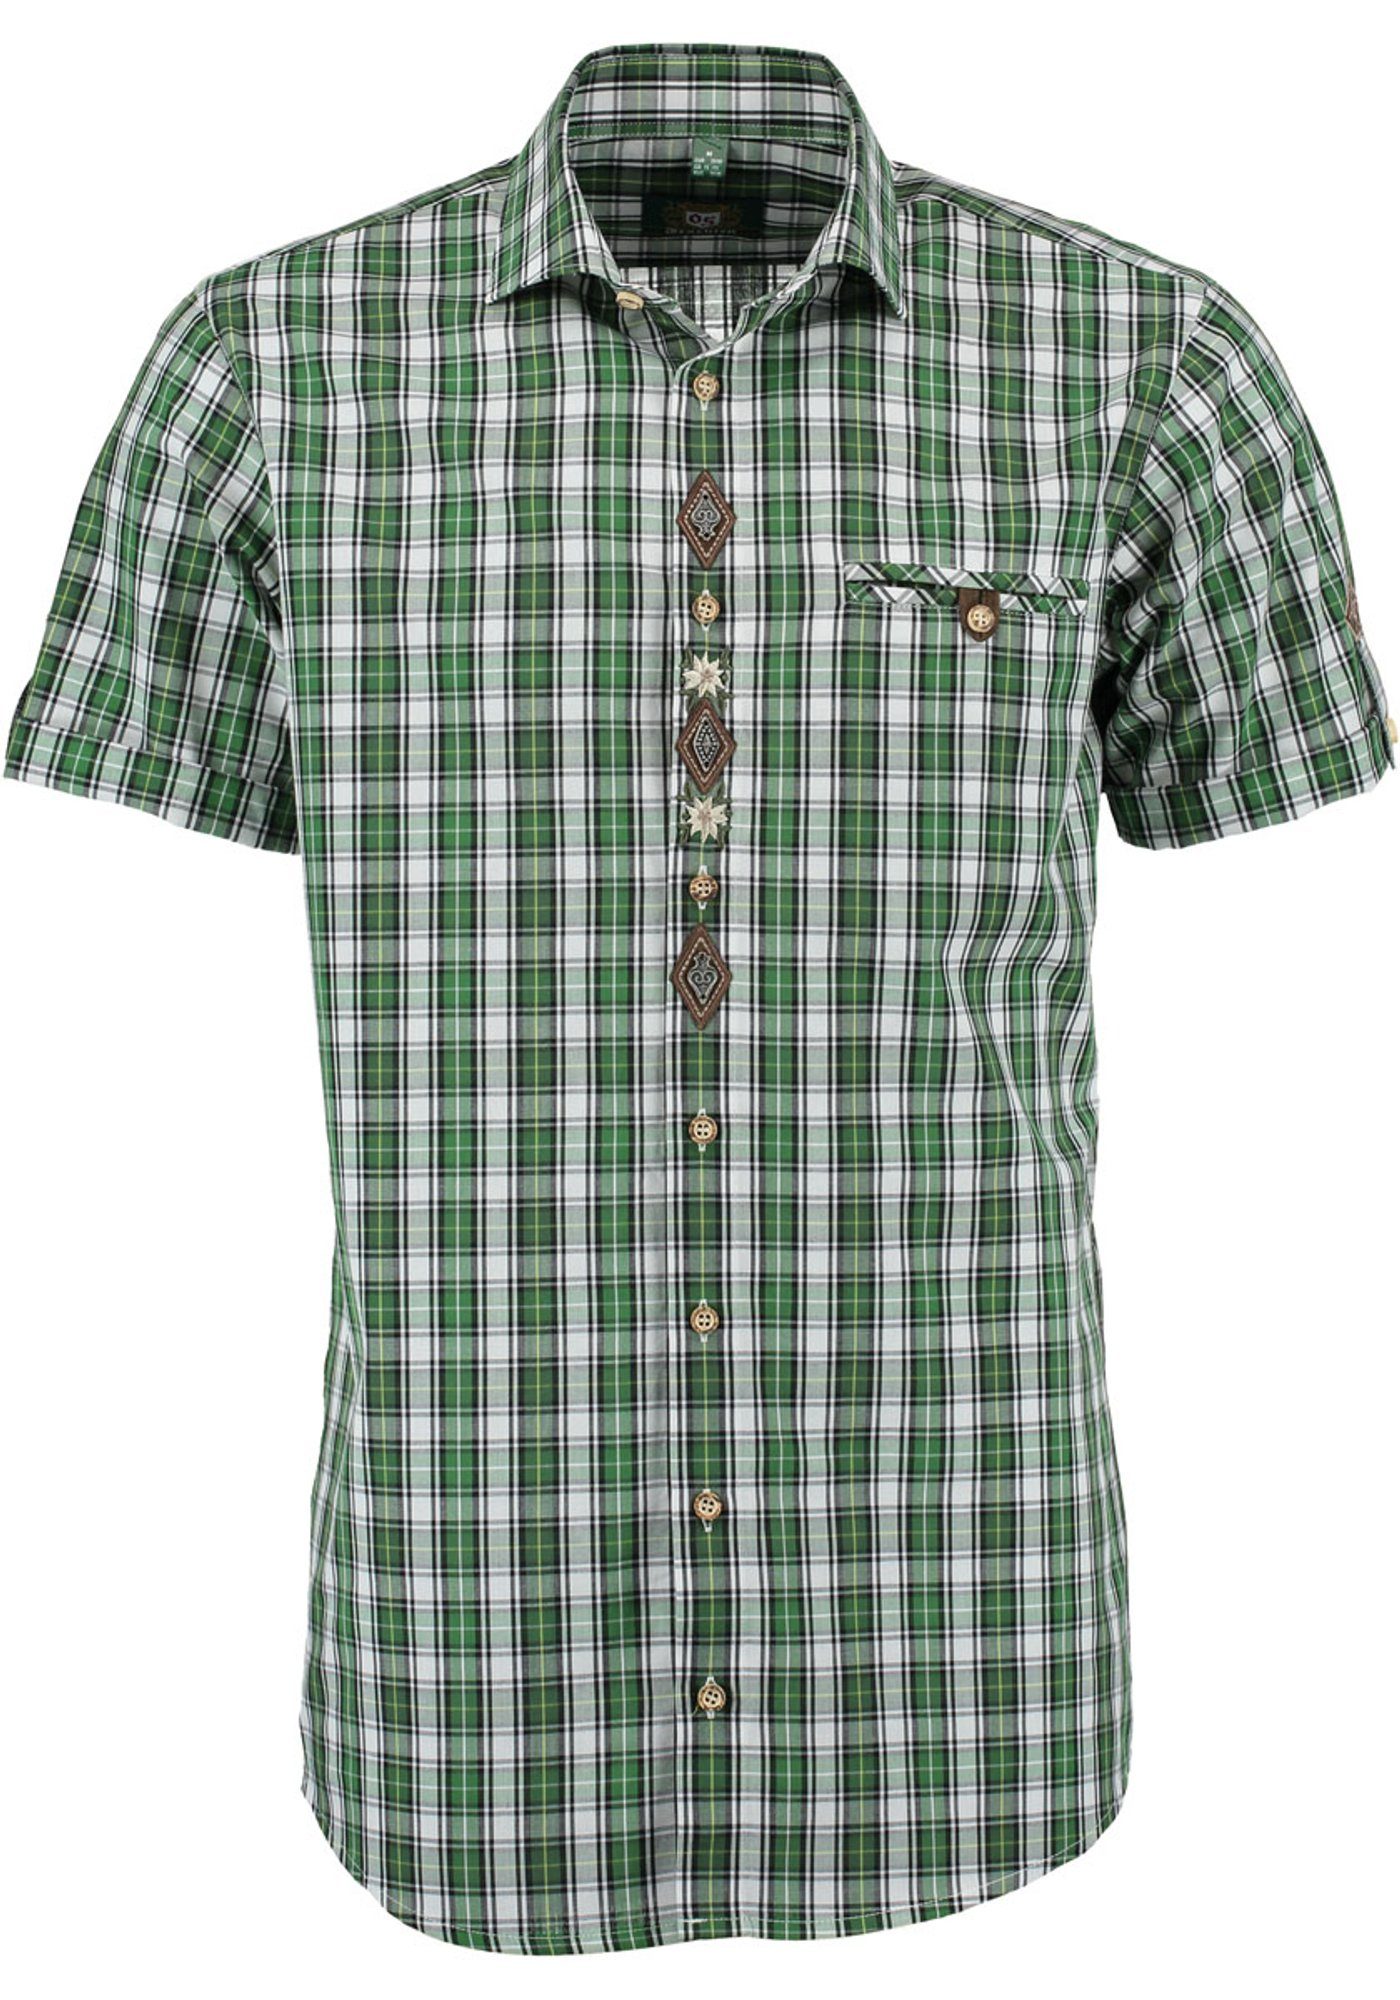 OS-Trachten Trachtenhemd Traioc Herren Kurzarmhemd mit aufgesetzter Brusttasche trachtengrün